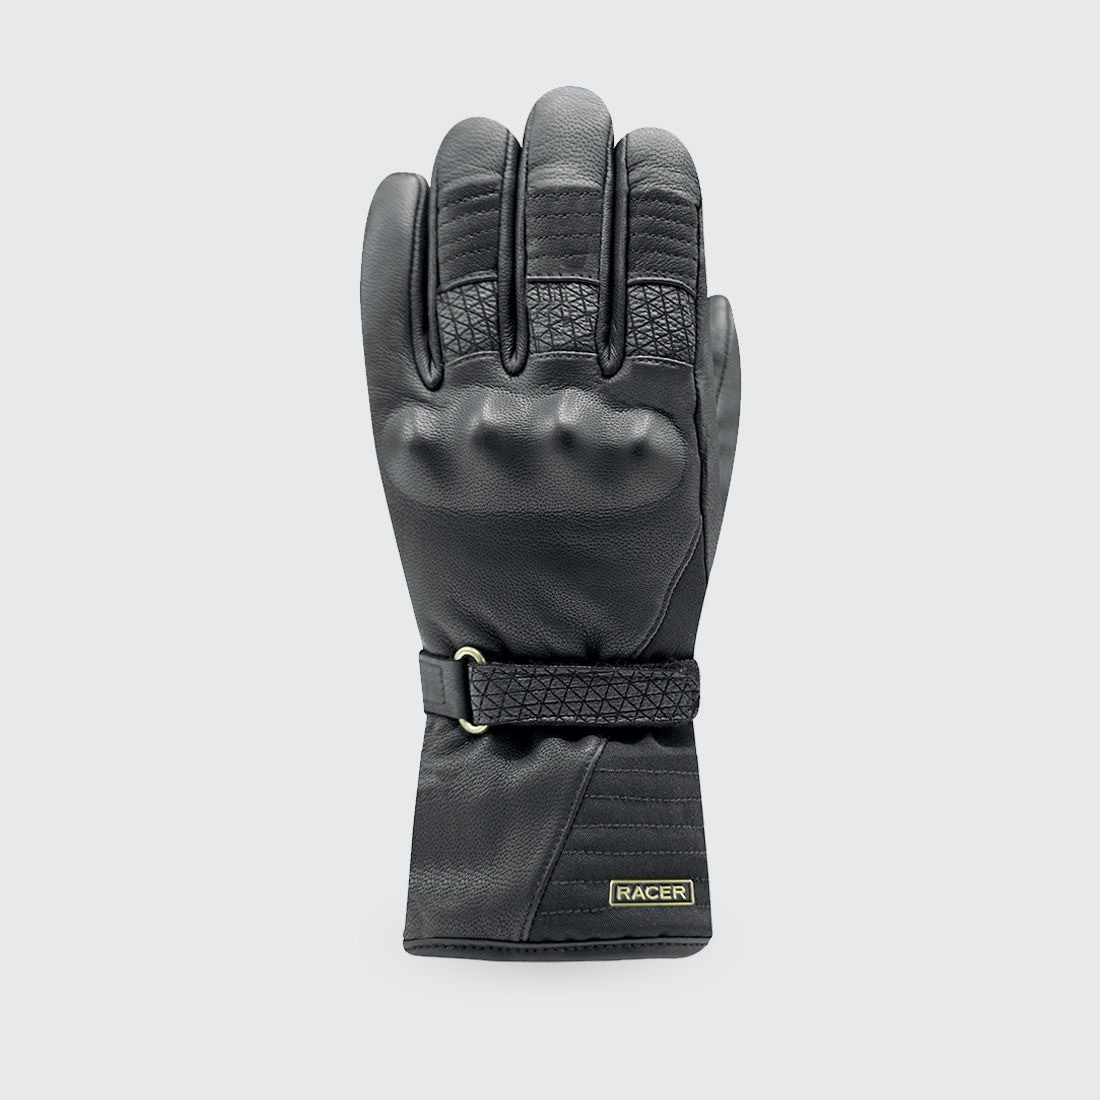 rukavice BELLA WINTER 3, RACER, dámské (černá, vel. S)